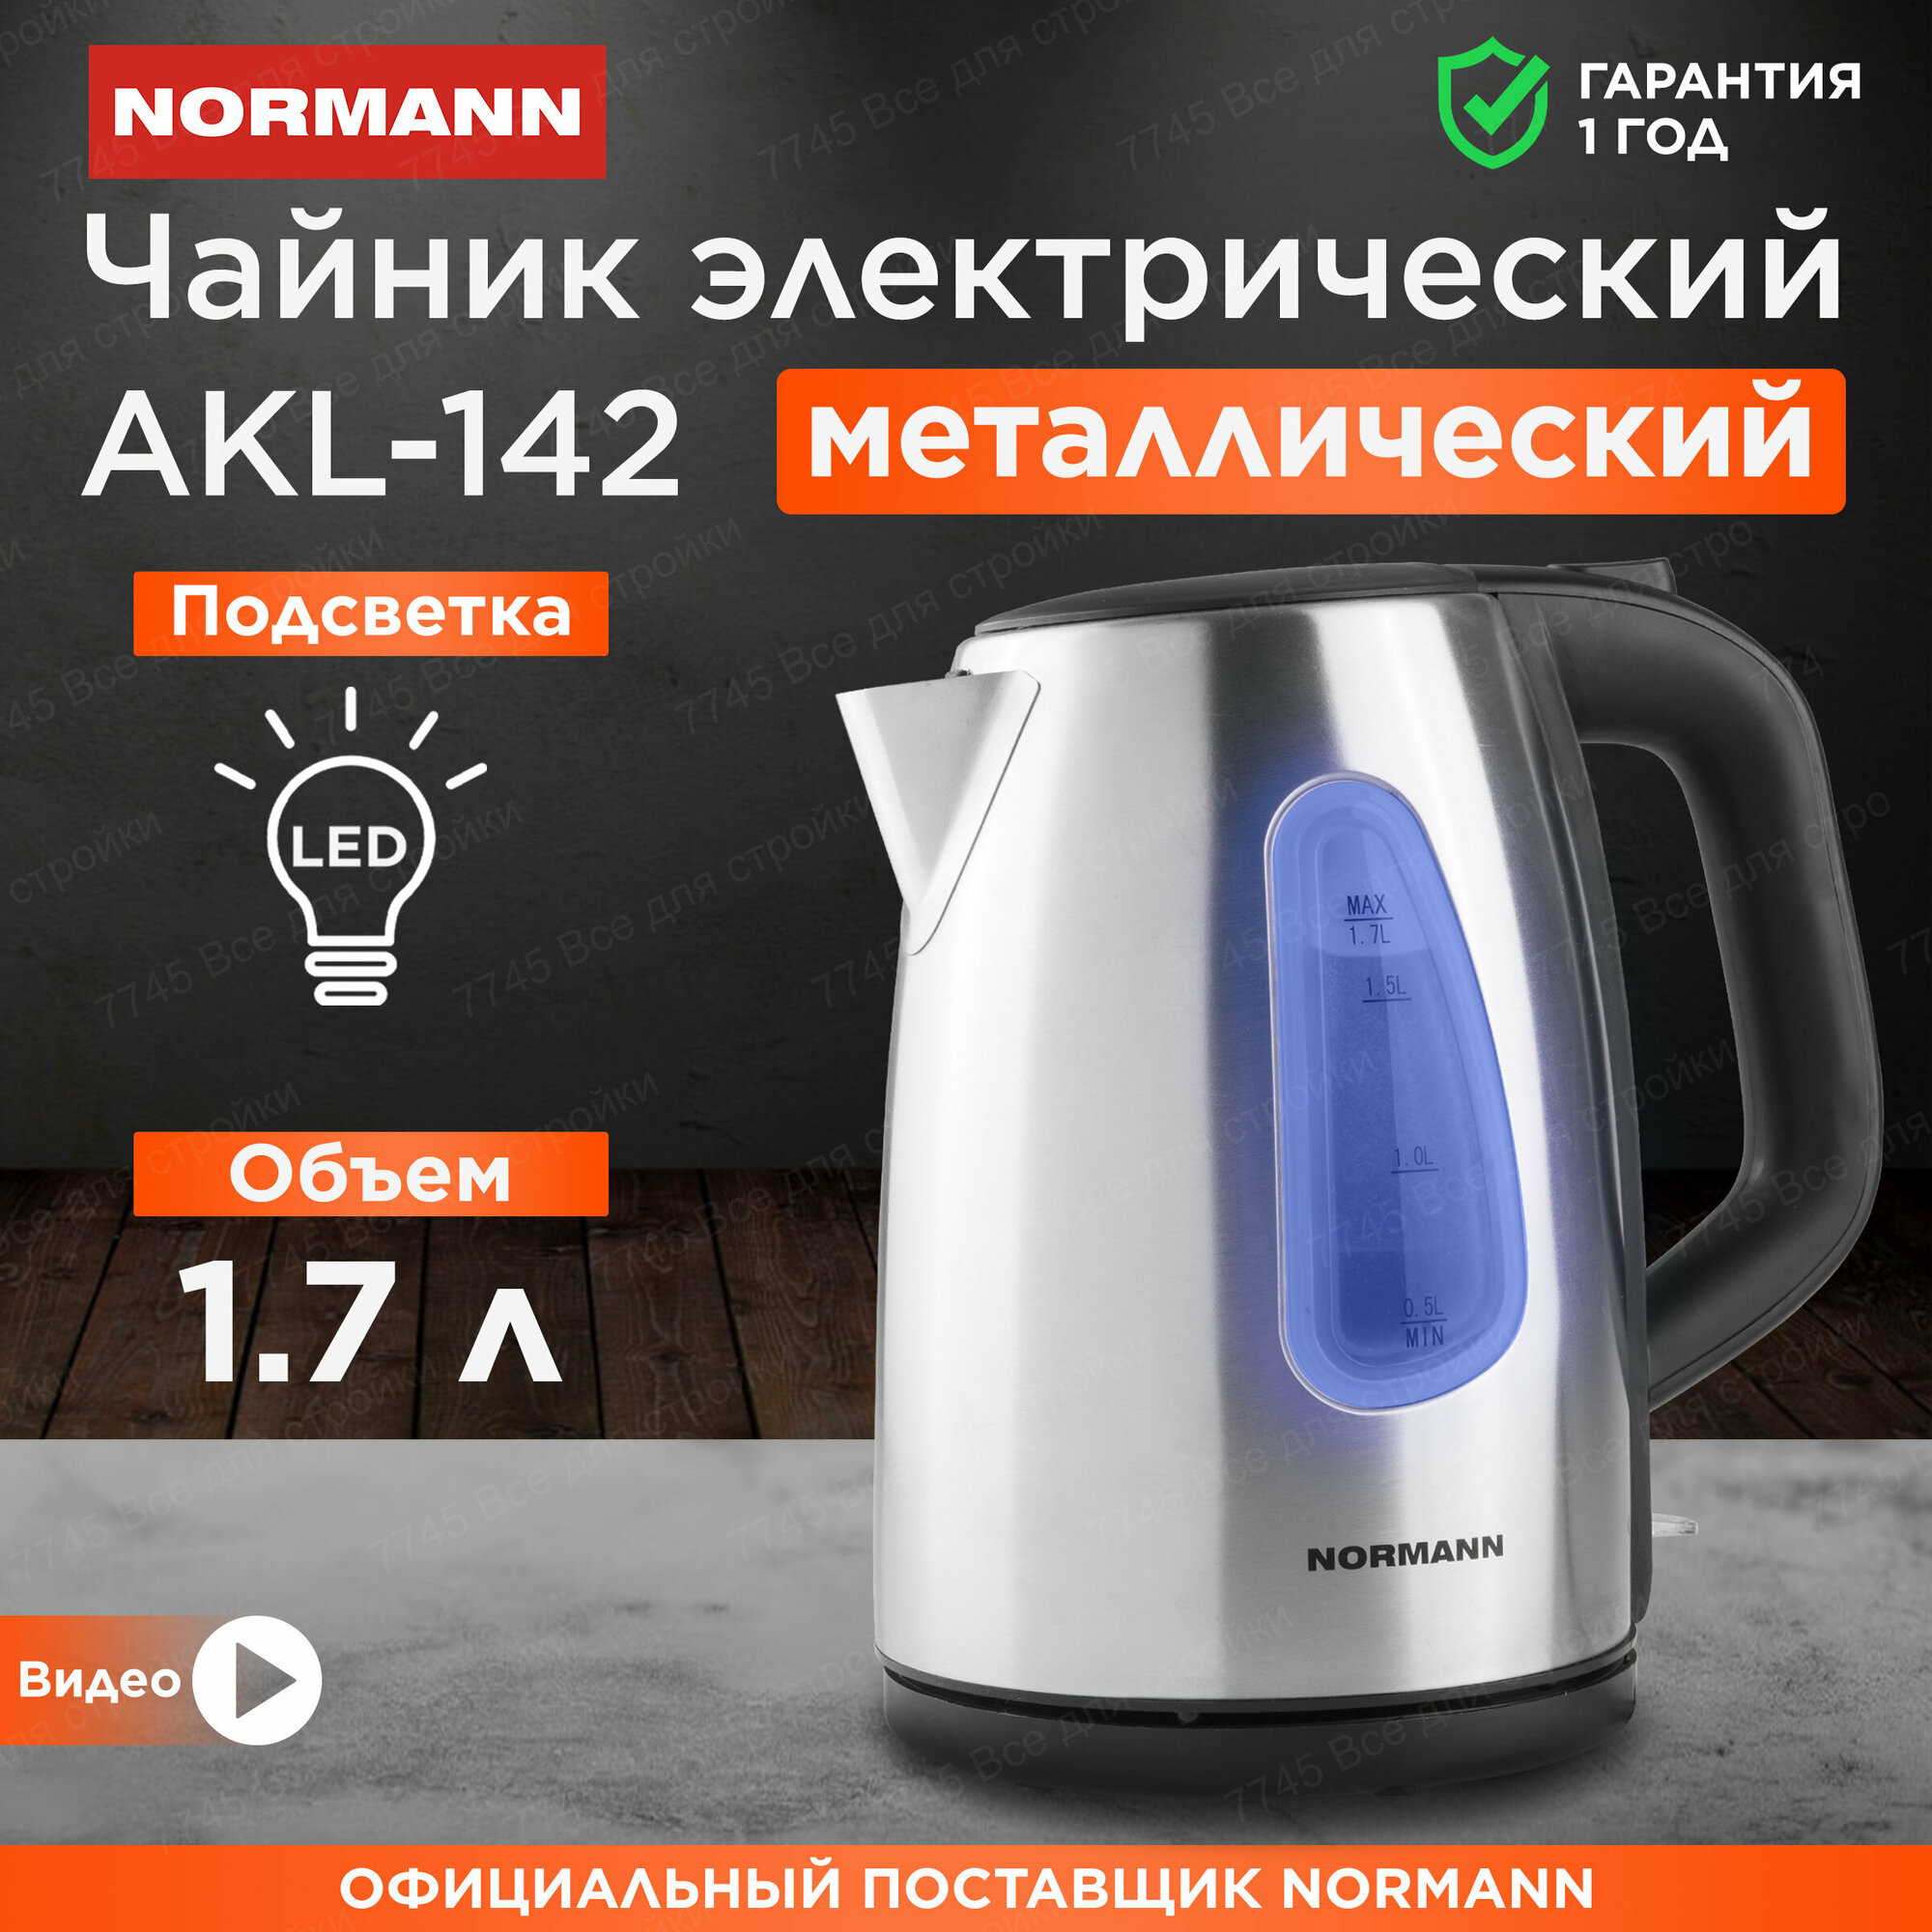 Чайник электрический металлический с подсветкой 1,7л NORMANN AKL-142